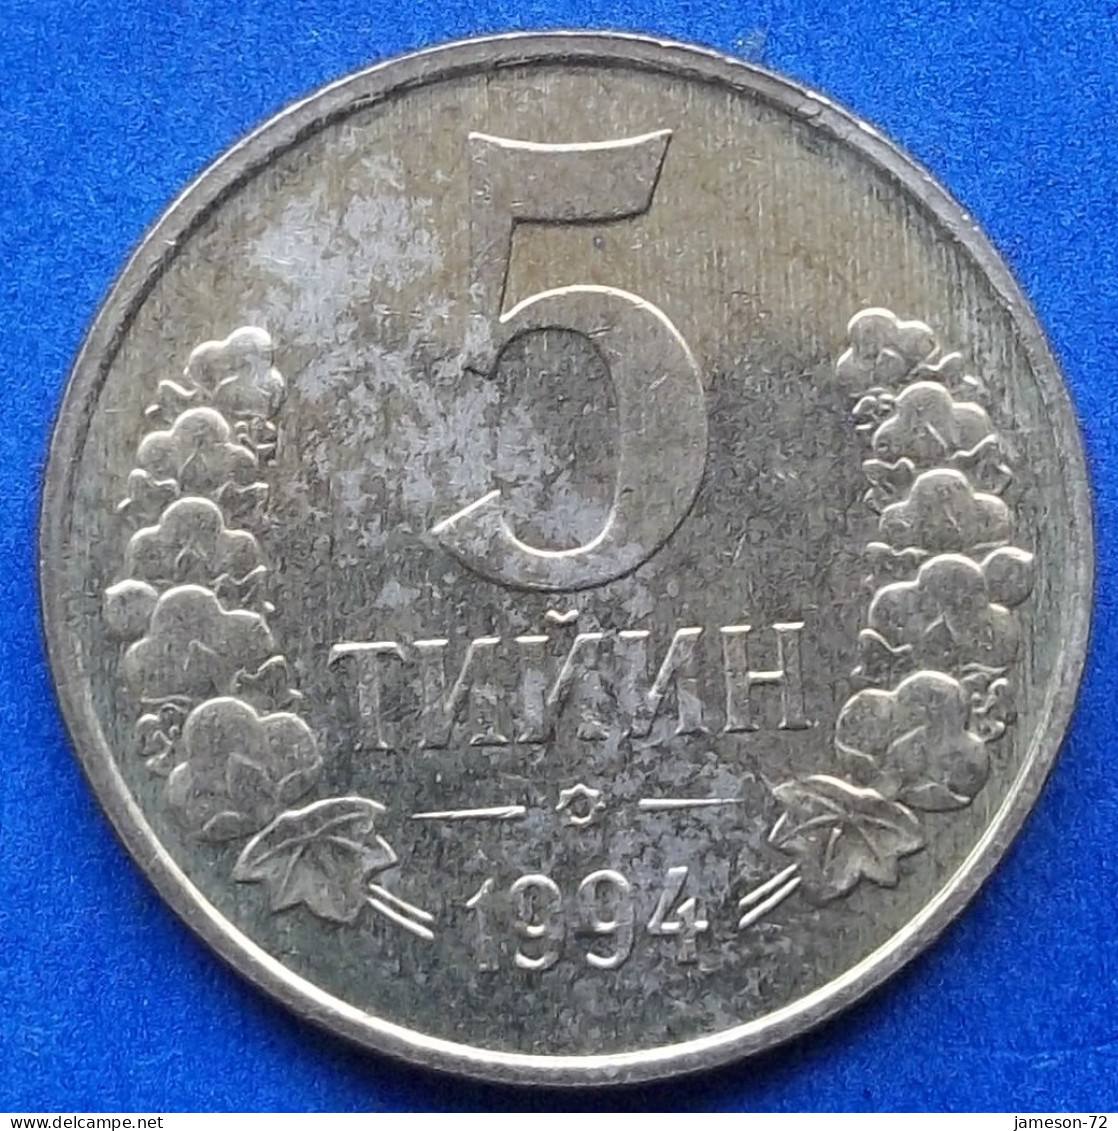 UZBEKISTAN - 5 Tiyin 1994 KM# 3 Independent Republic (1991) - Edelweiss Coins - Usbekistan